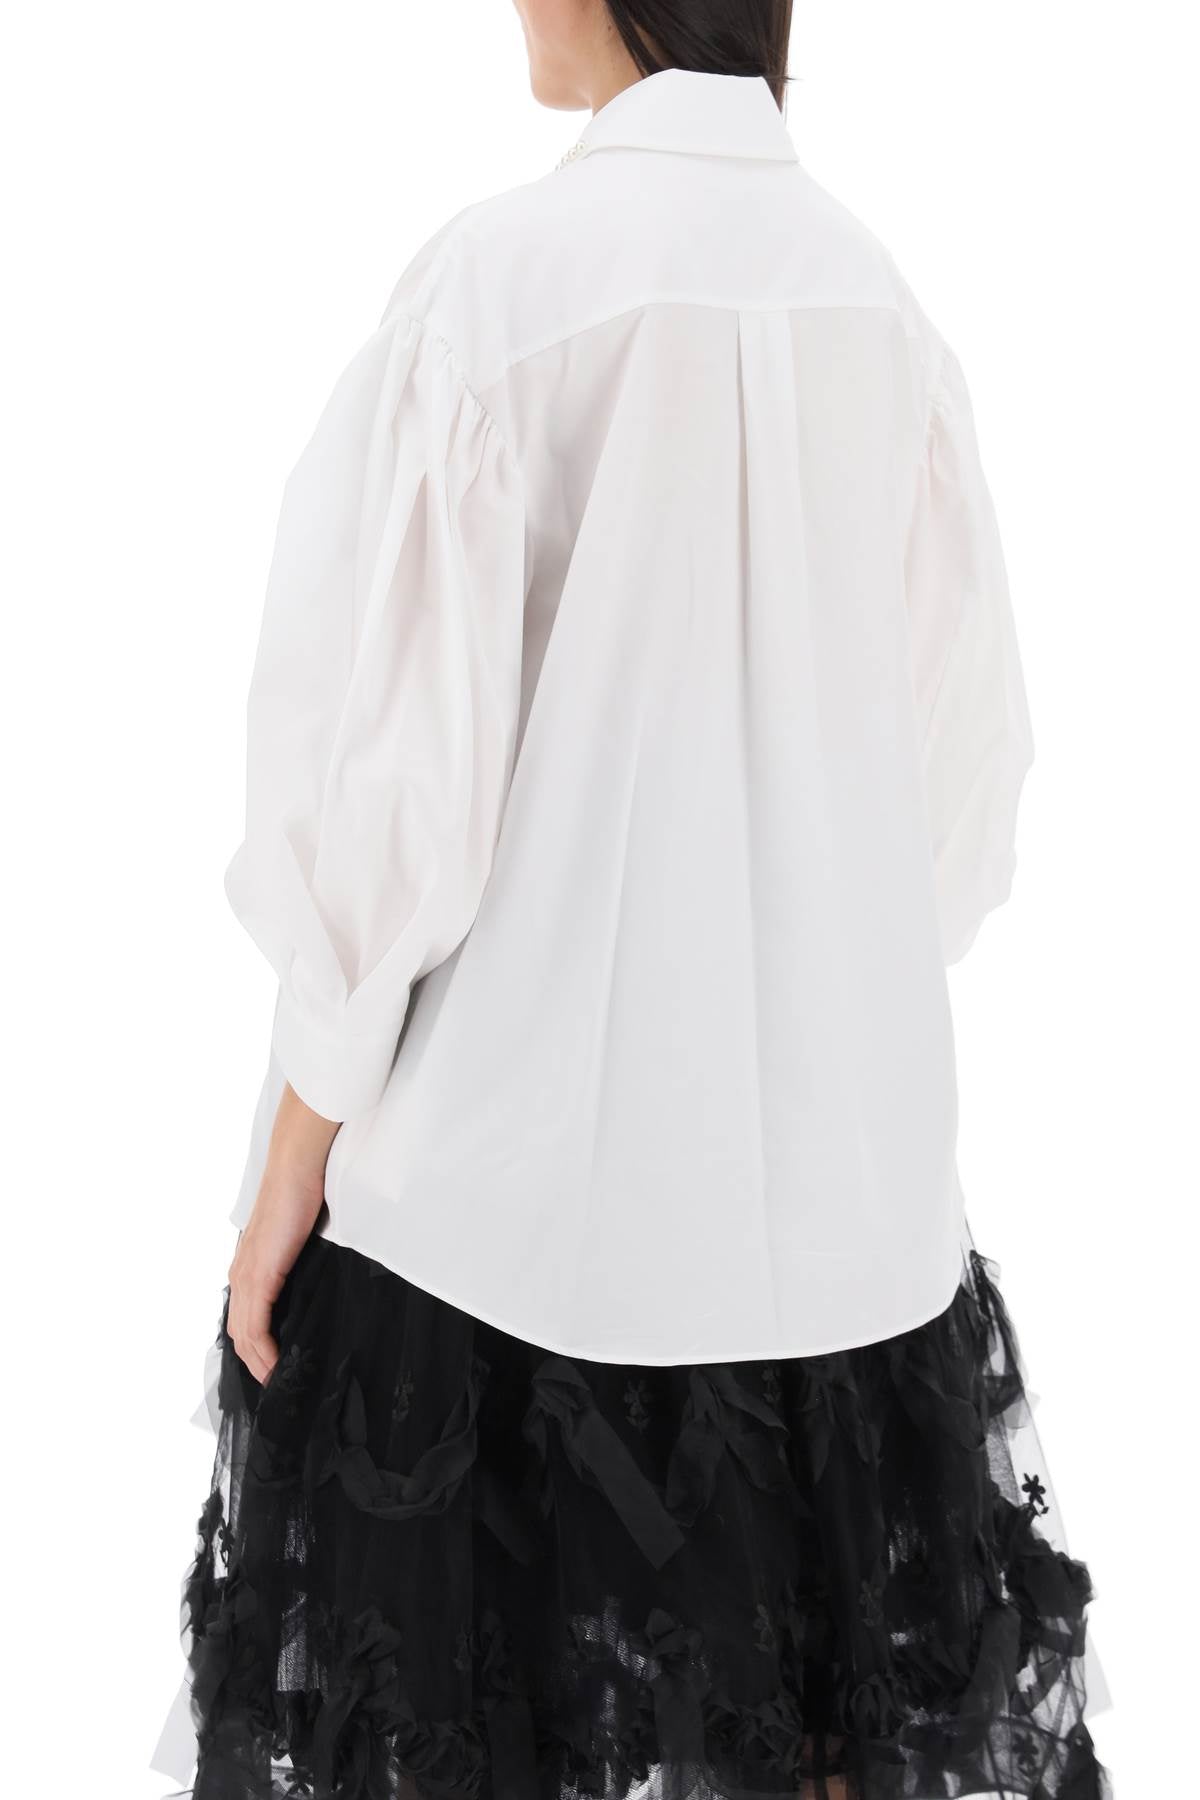 SIMONE ROCHA Feminine White Puff Sleeve Embellished Shirt